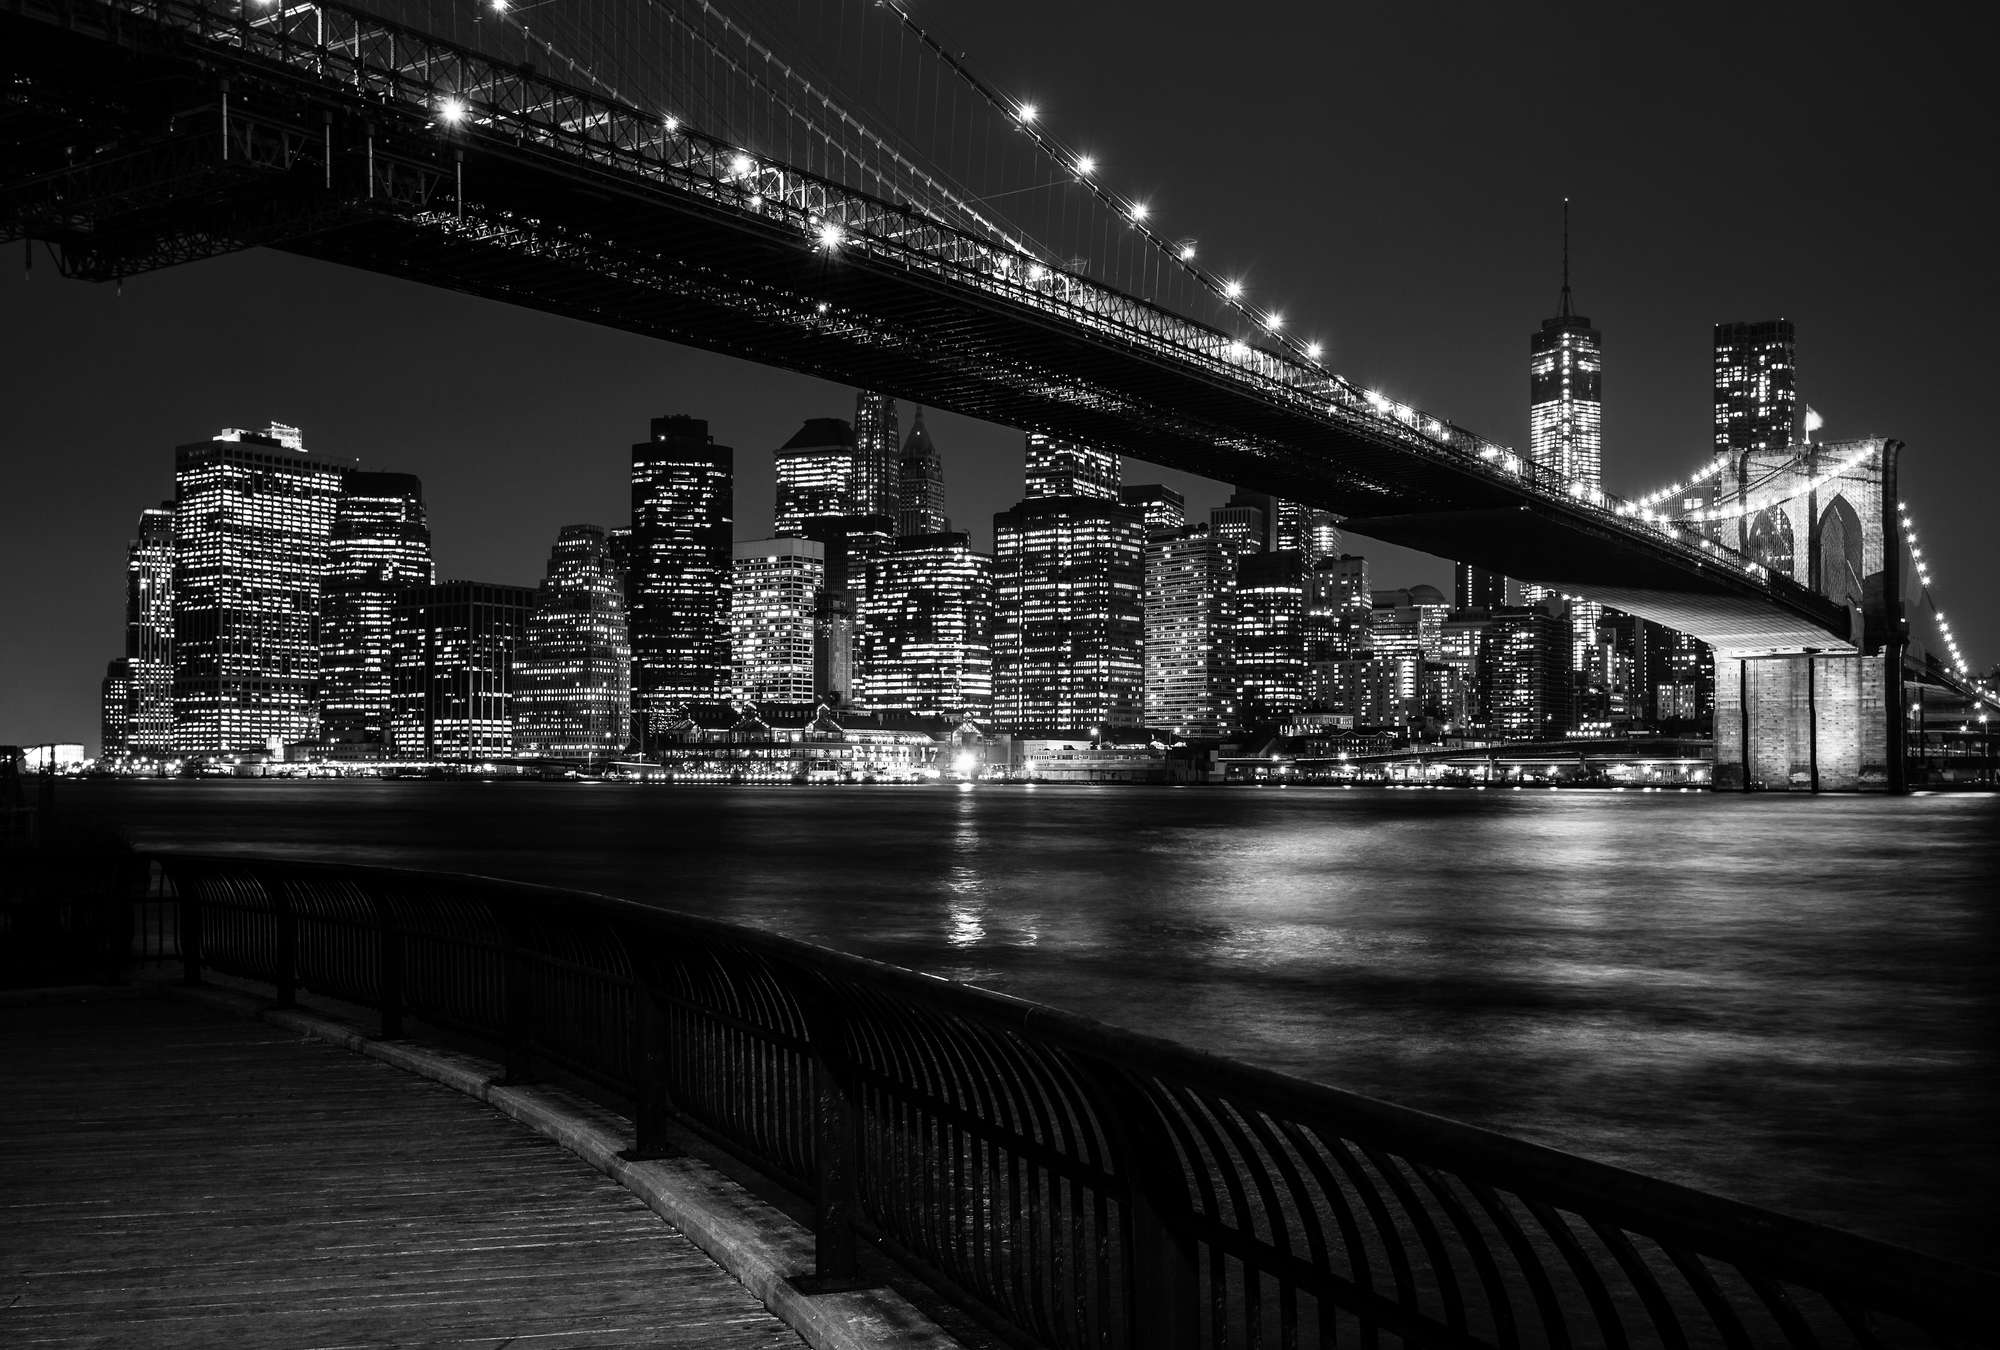             Mural del puente de Brooklyn de noche - Blanco y negro
        